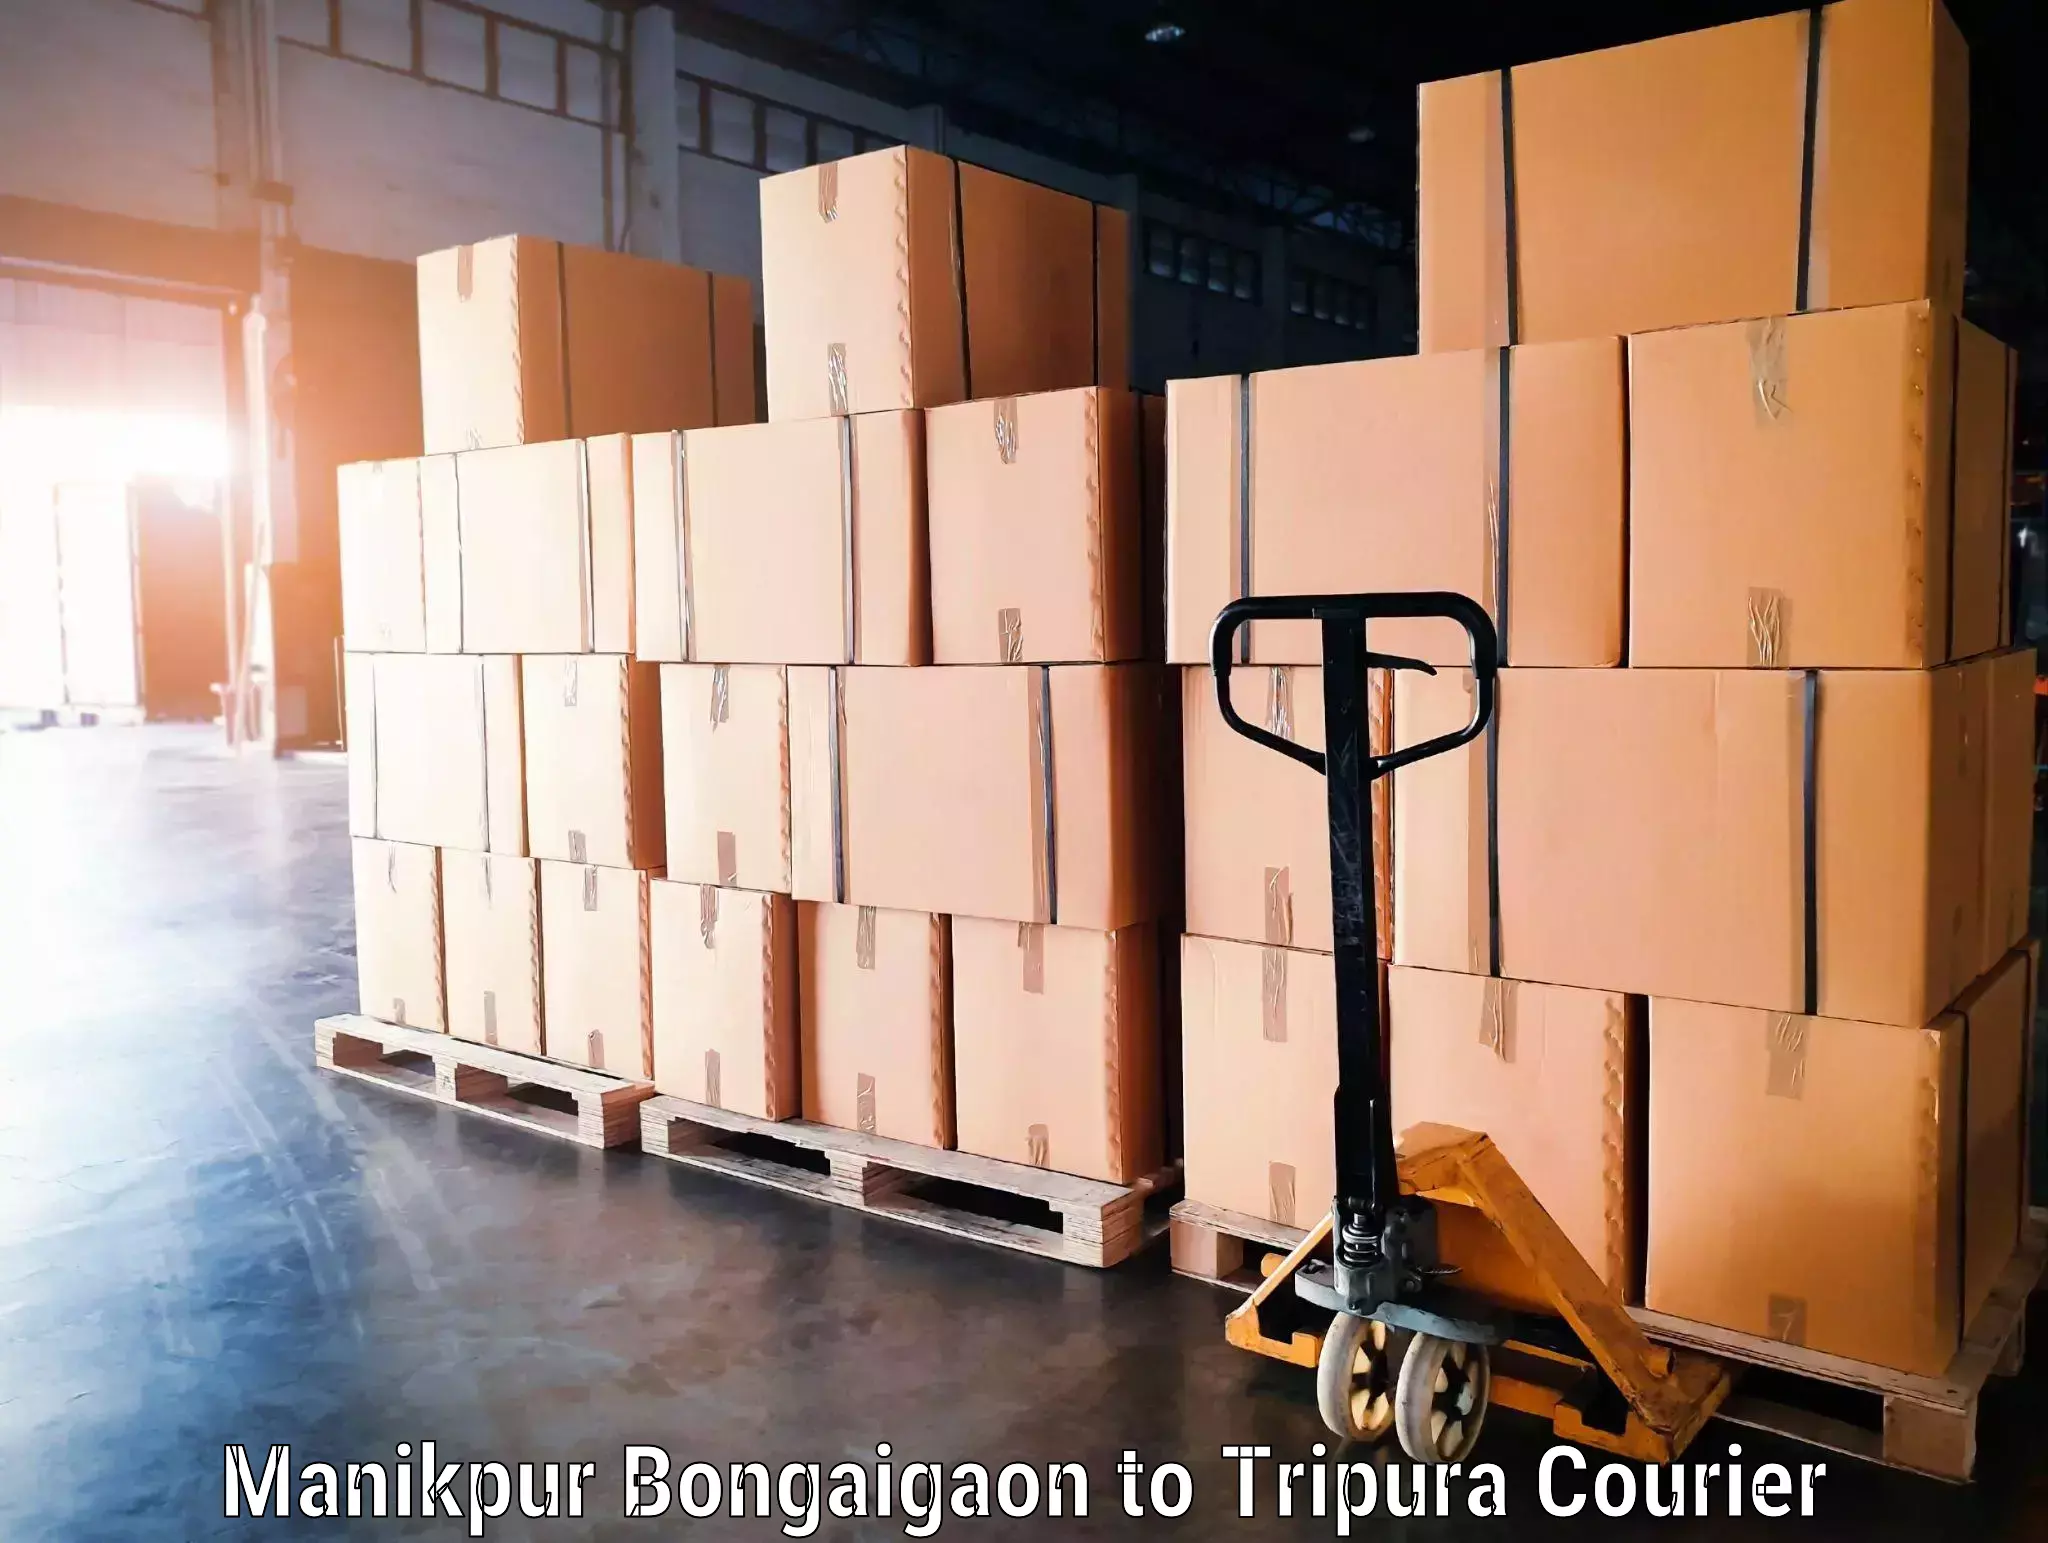 Hassle-free luggage shipping Manikpur Bongaigaon to Khowai